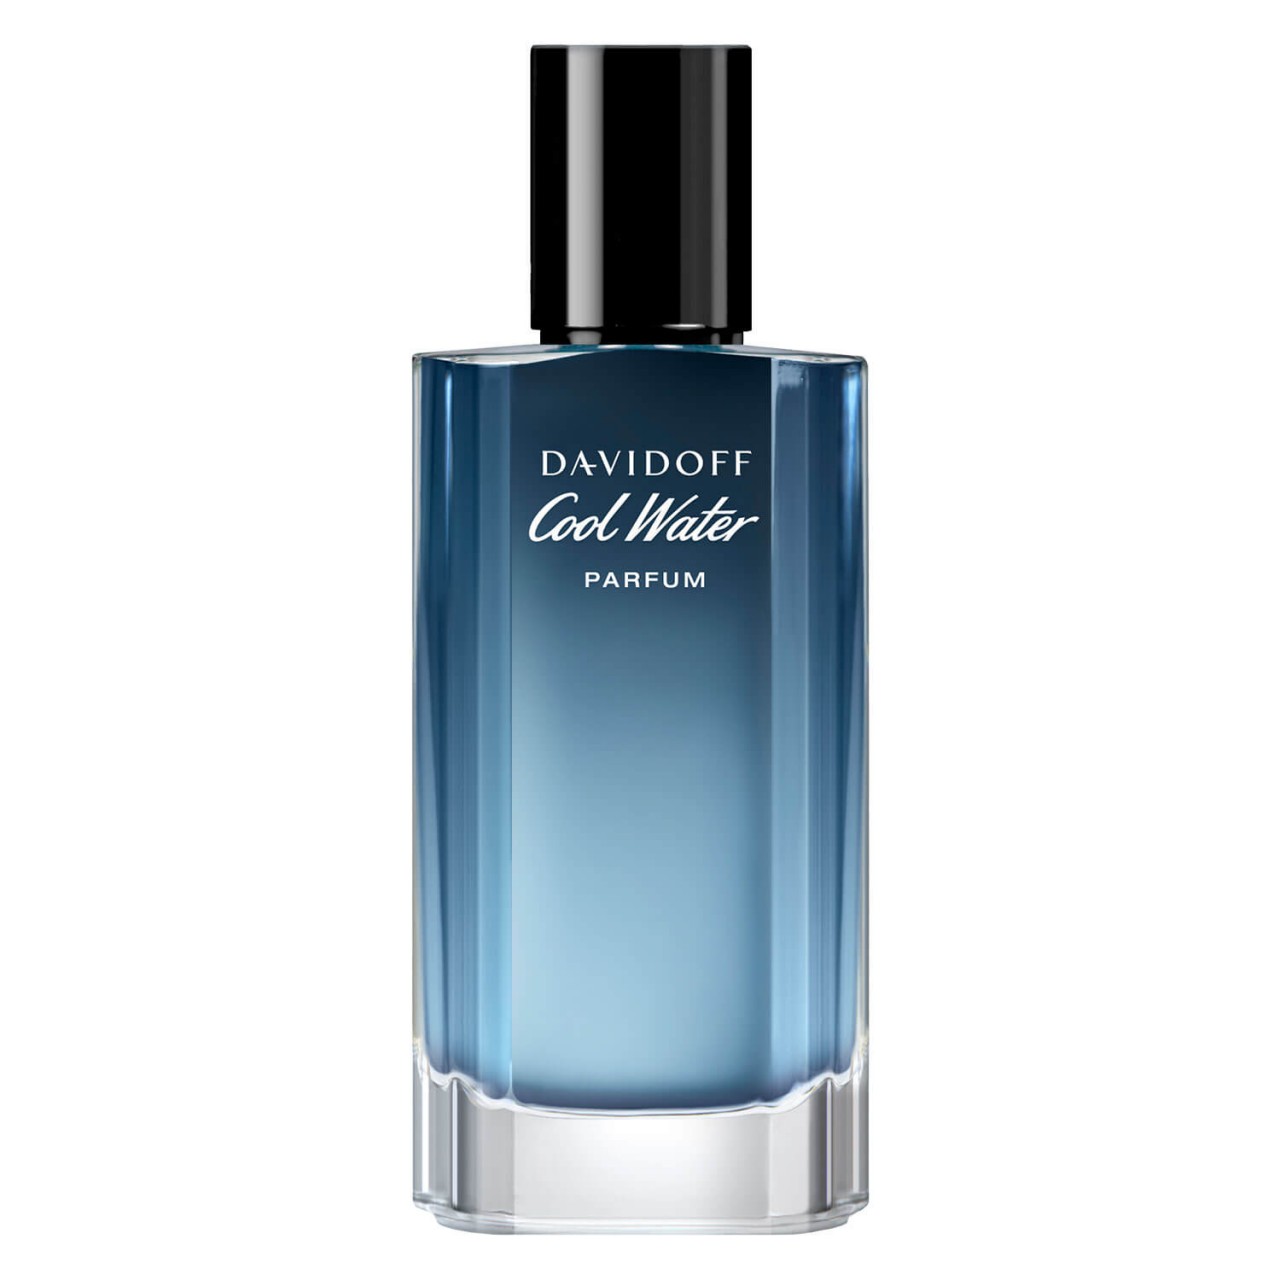 Cool Water - Parfum For Him von Davidoff